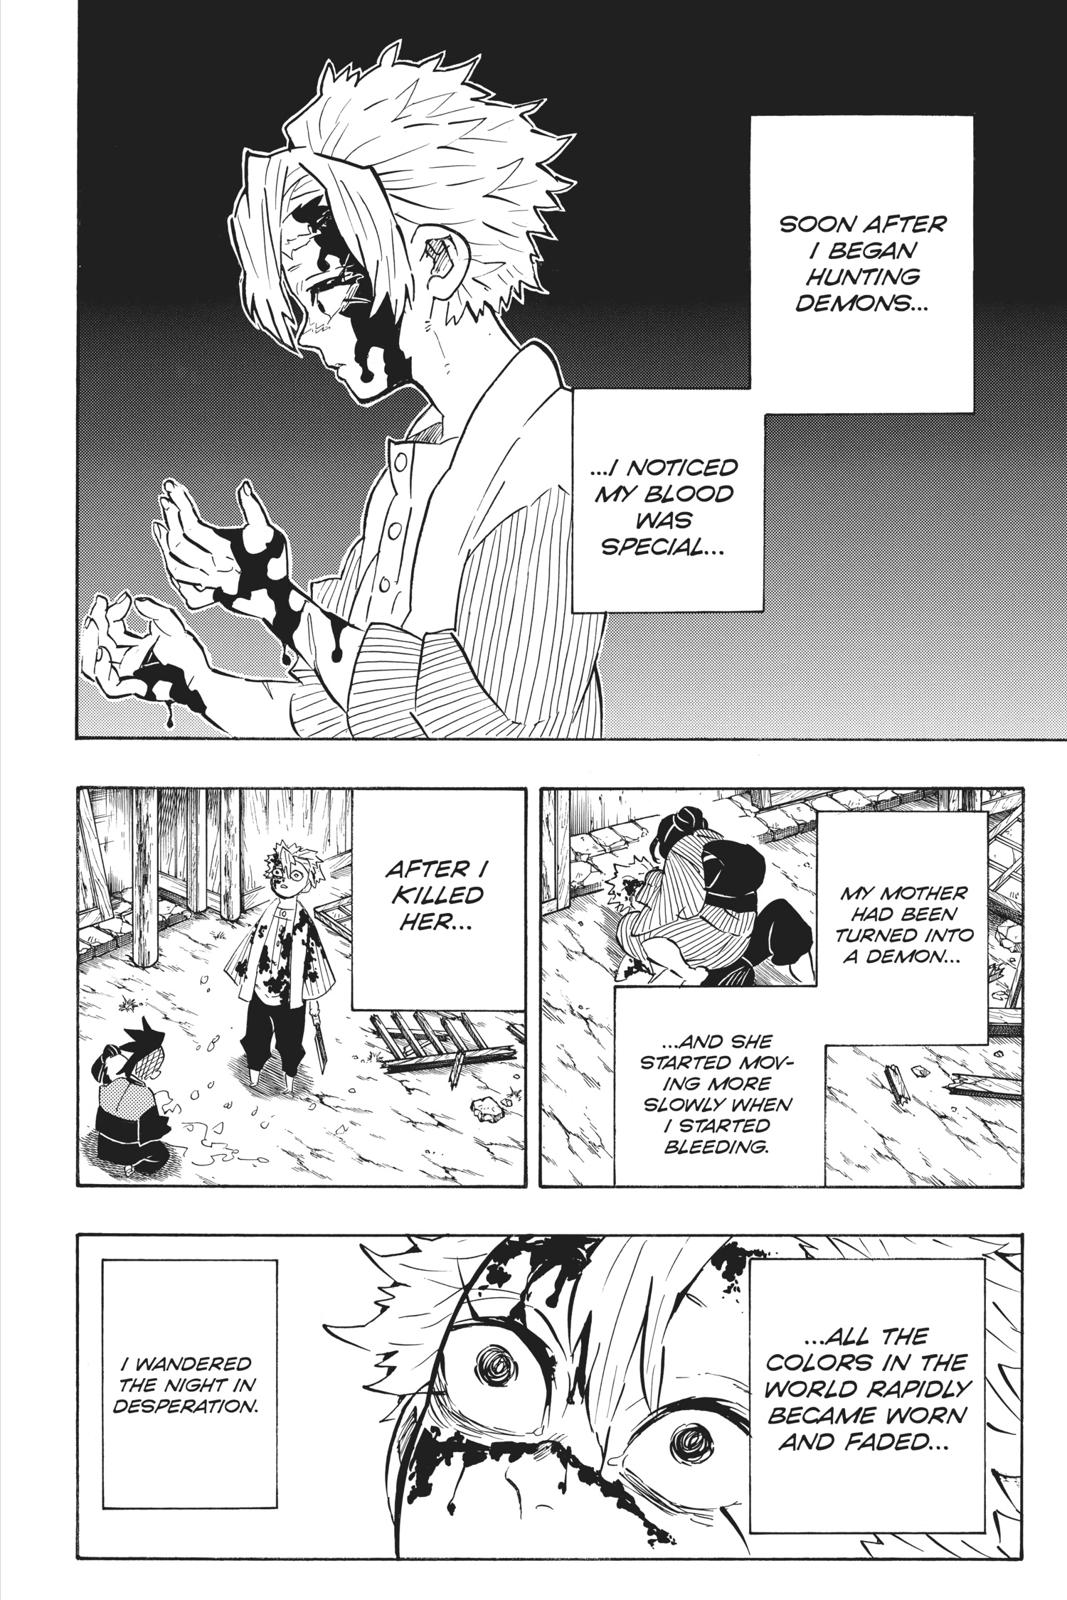 Demon Slayer Manga Manga Chapter - 168 - image 2